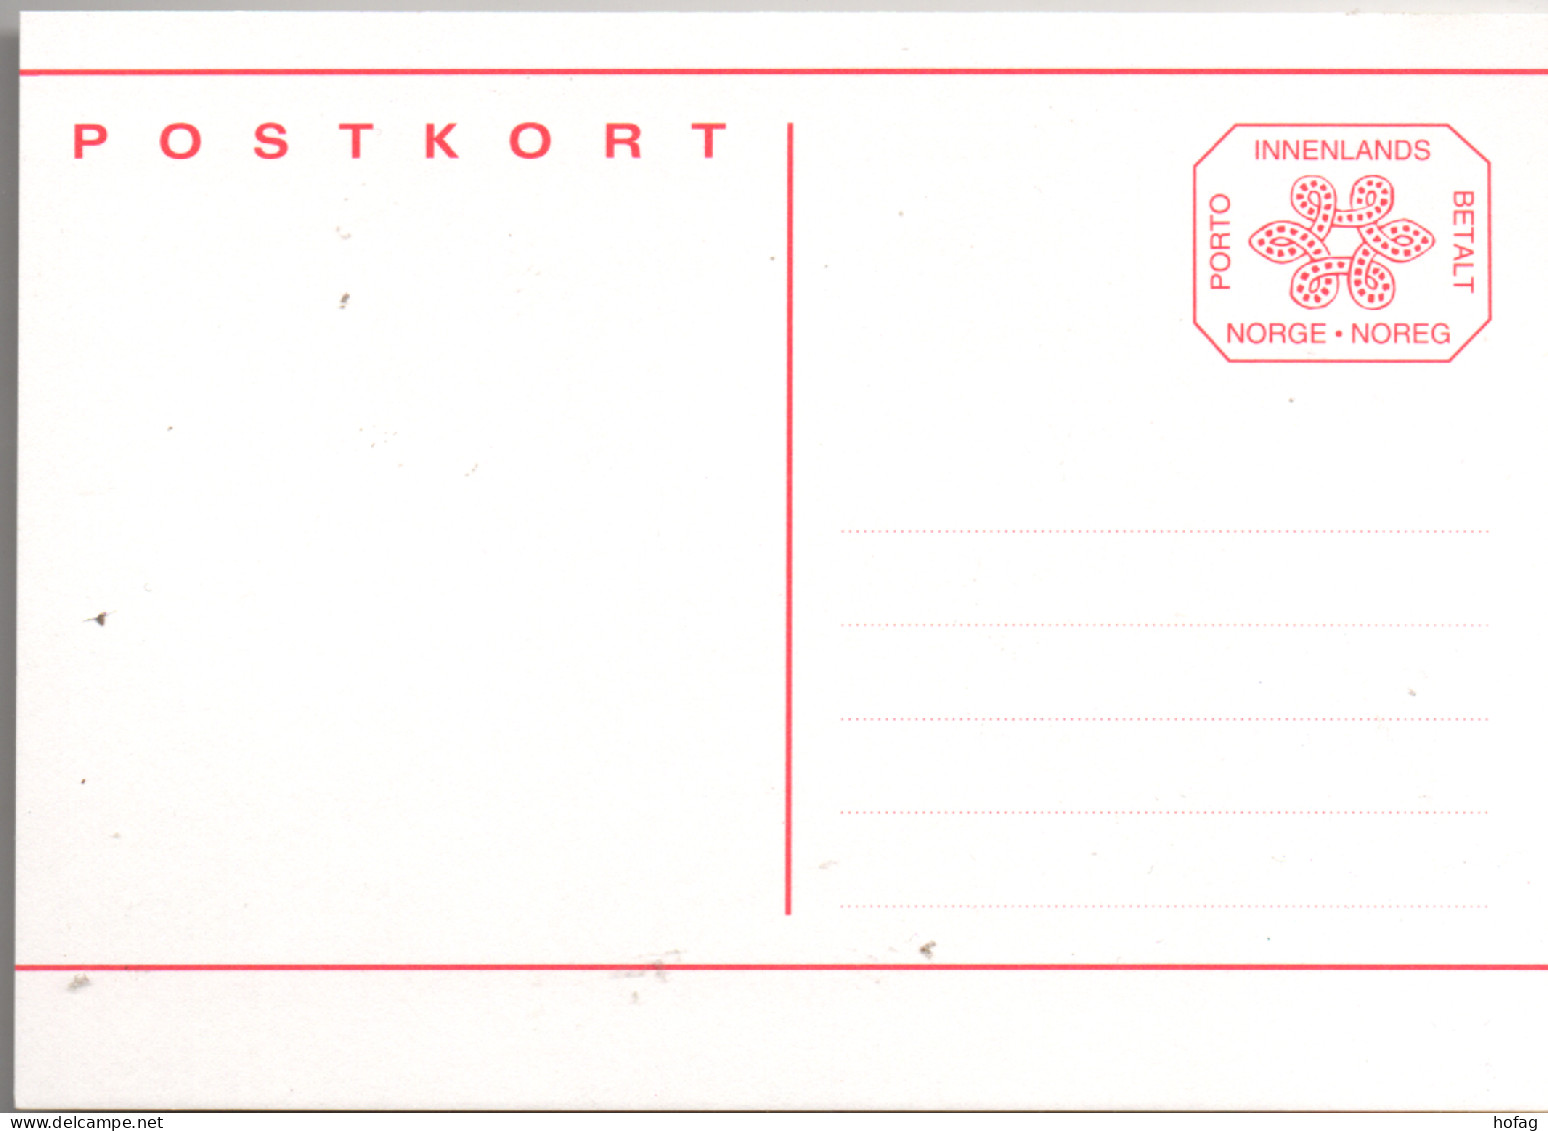 Norwegen Postkarte Ganzsache Innenlands Betalt Linien Postfrisch; Norway Stationery MNH - Entiers Postaux